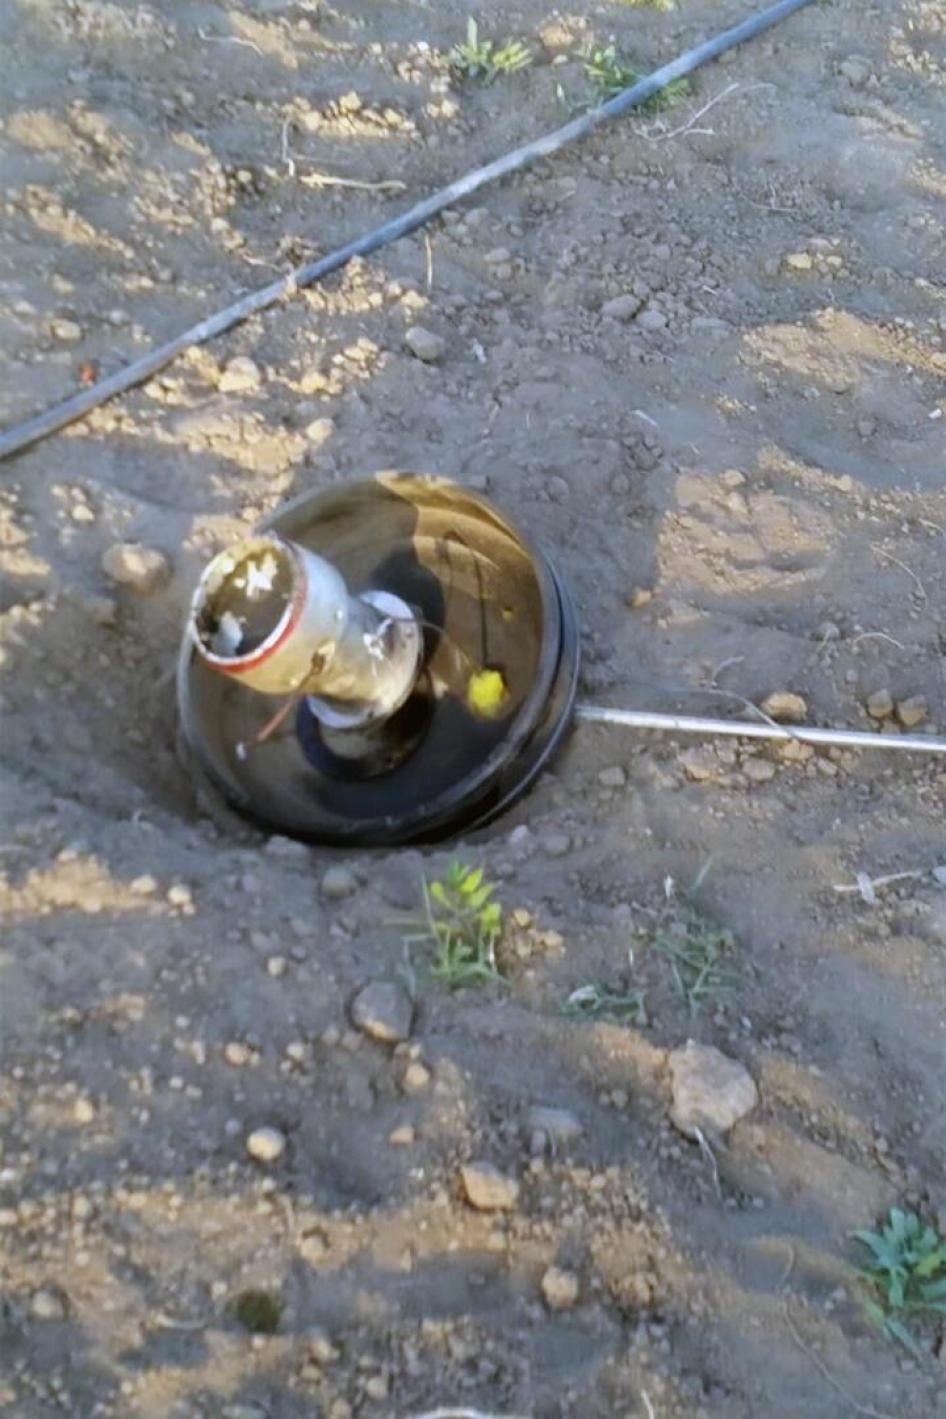 Parte do mecanismo de explosão de um foguete tipo cluster “ASTROS” situado no local reportado de sua queda, em Qahza, província de Saada, no dia 22 de fevereiro de 2017. 